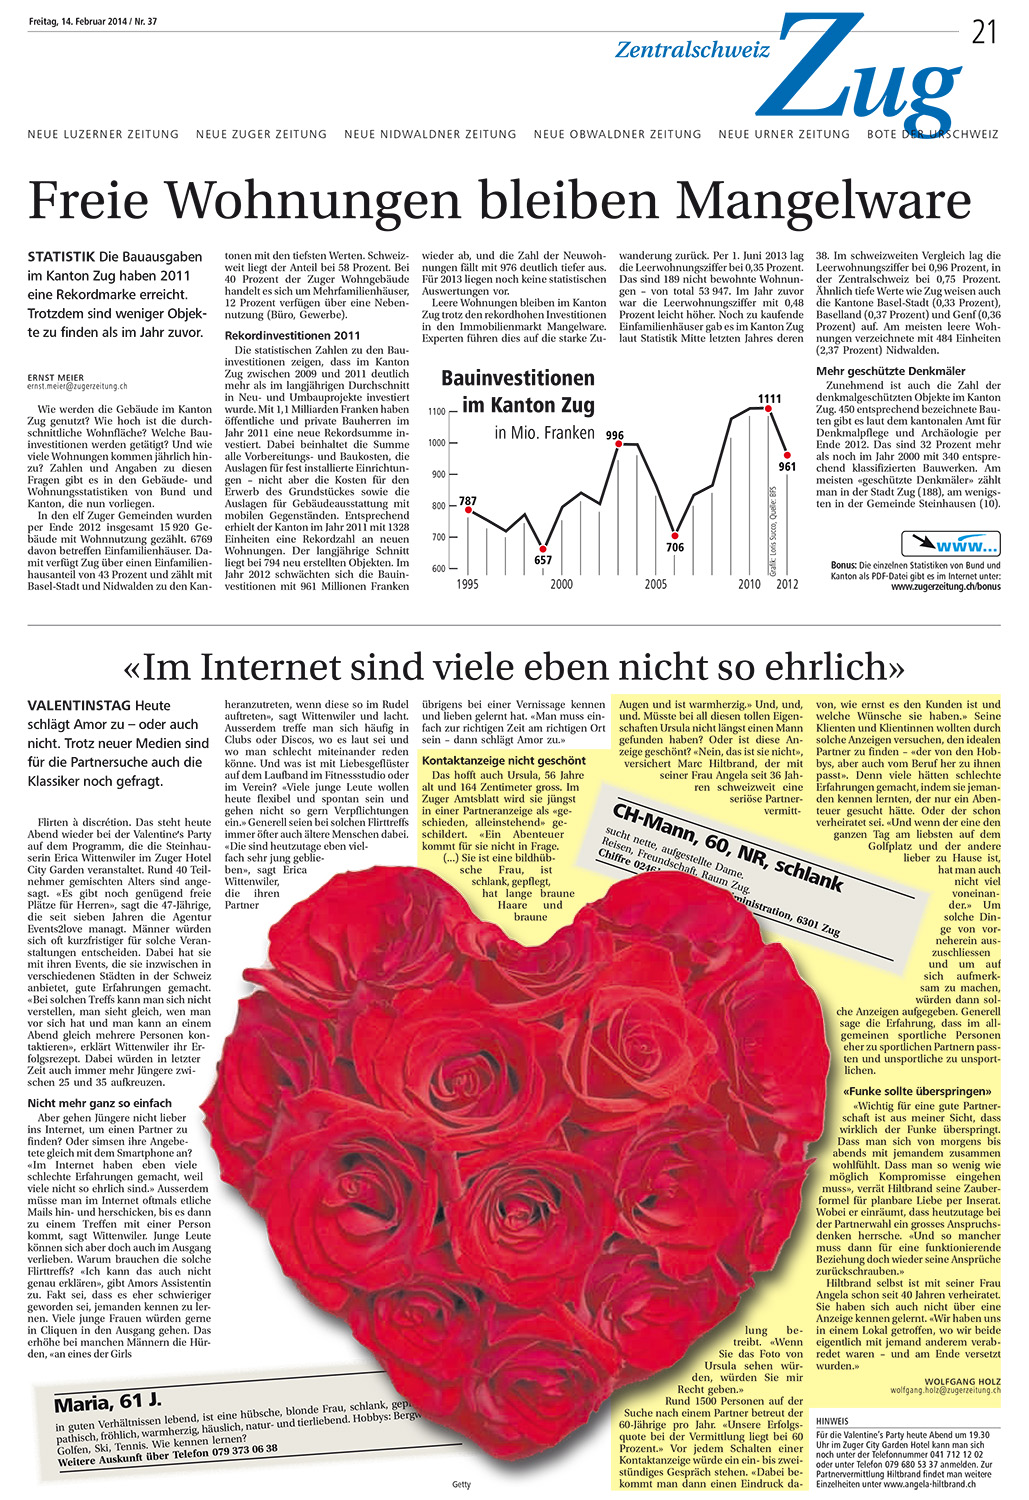 Neue Zuger Zeitung - Februar 2014